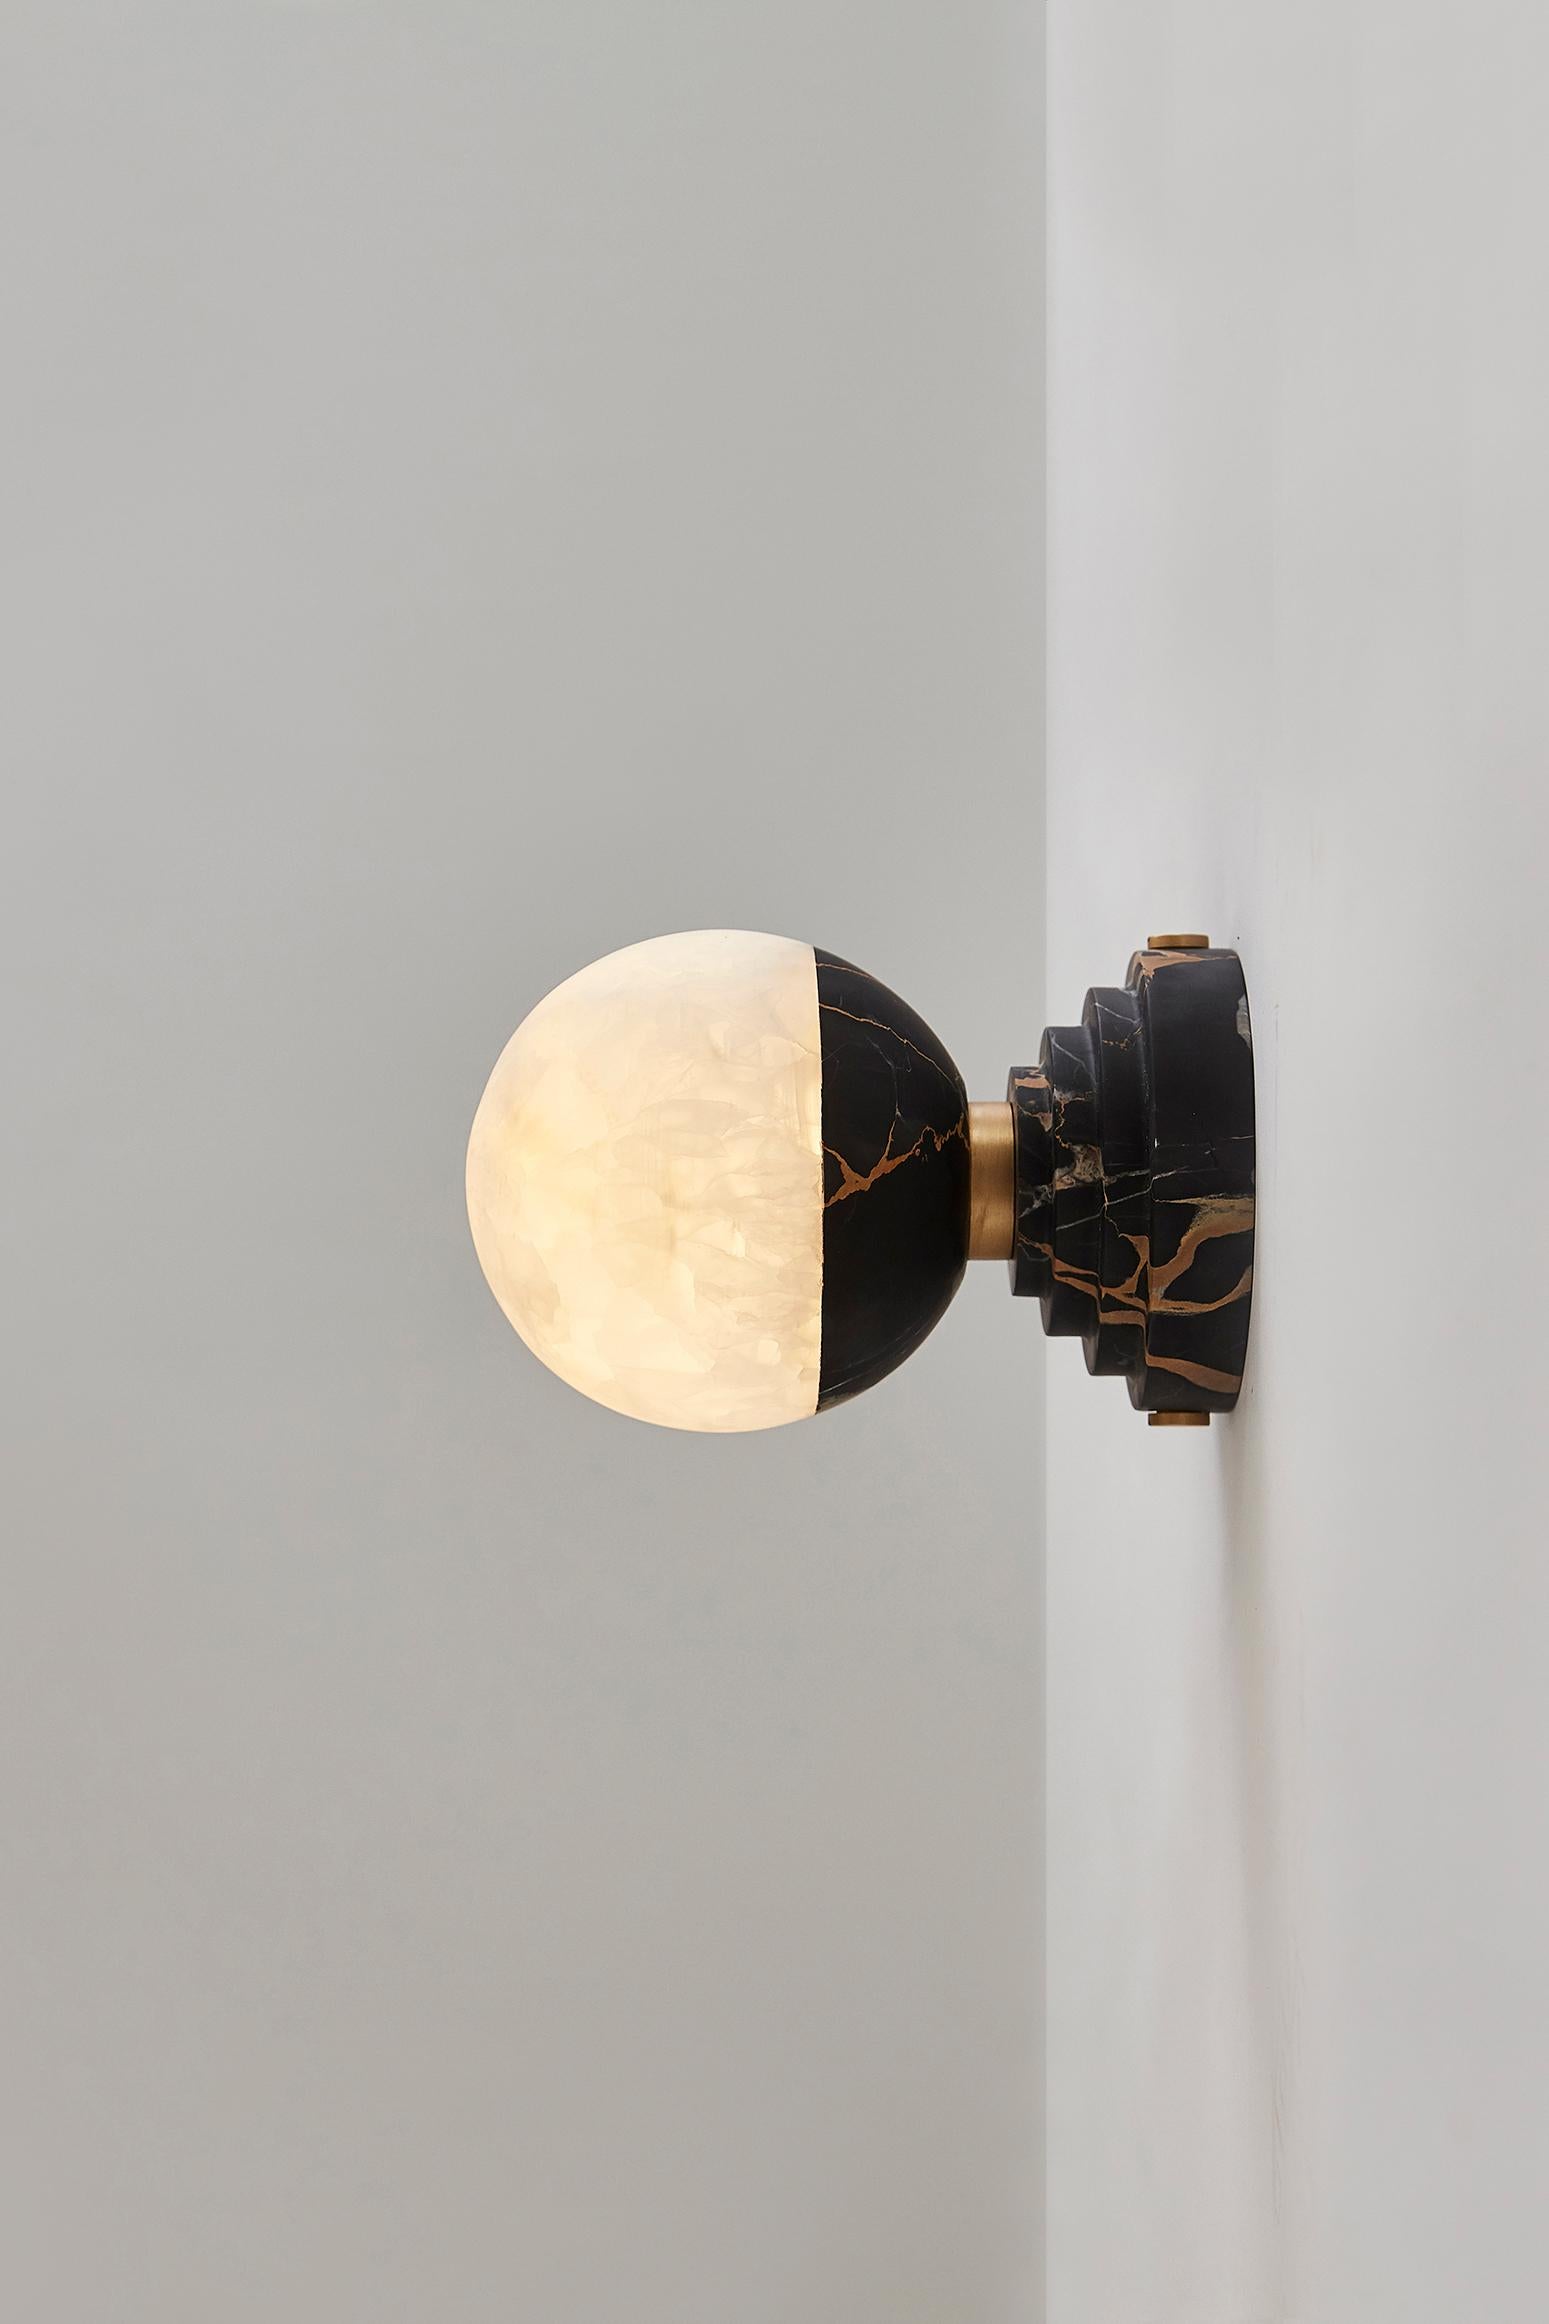 Die leuchtende Onyx-Ampoule, die den Raum mit einem warmen und gemütlichen Licht erhellt, ist eine Liebeserklärung an den silbernen Mond, die so viele Dichter und Künstler inspiriert hat. Lunar steht auf einem Marmorsockel (verfügbar in Grand